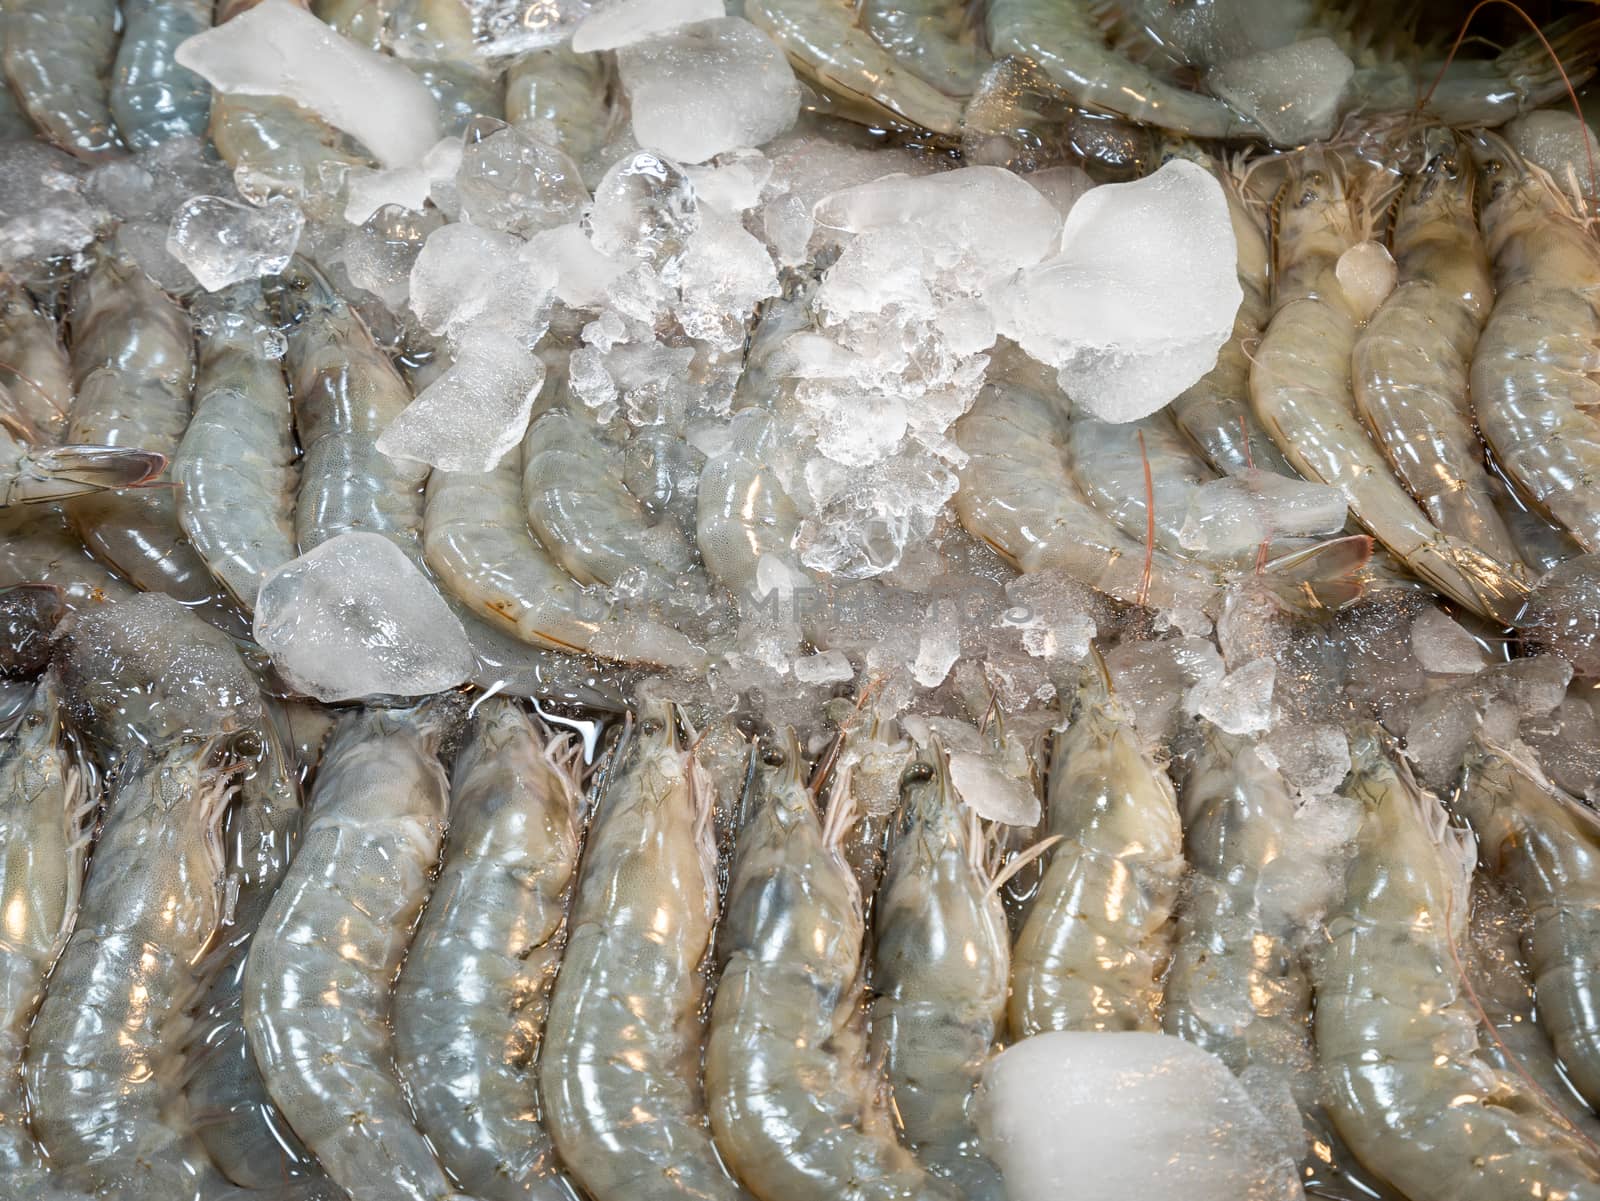 Fresh shrimps on crushed ice